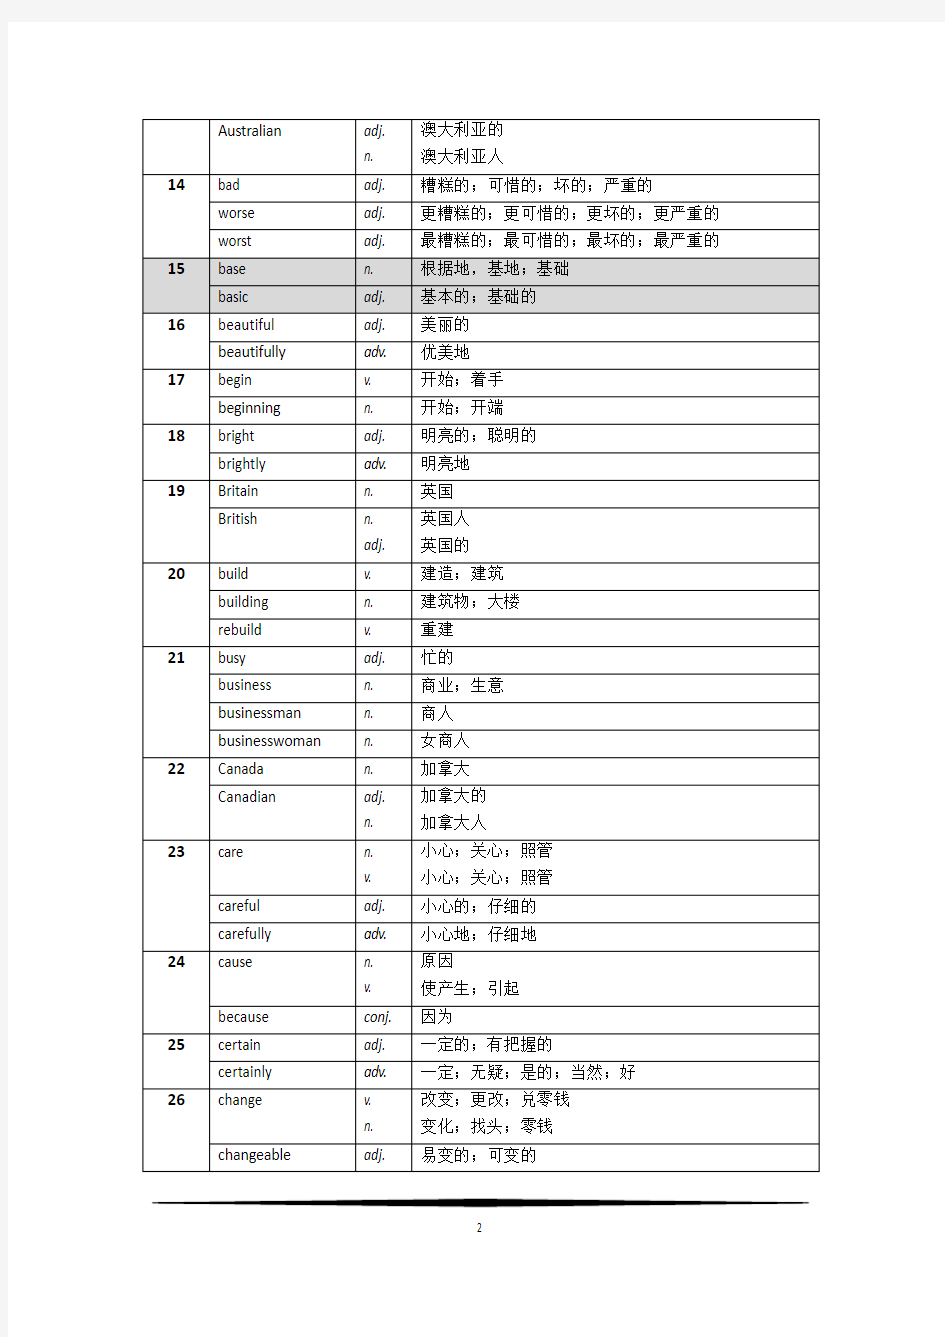 上海市初中英语教学基本词汇表-词性转换(2012)